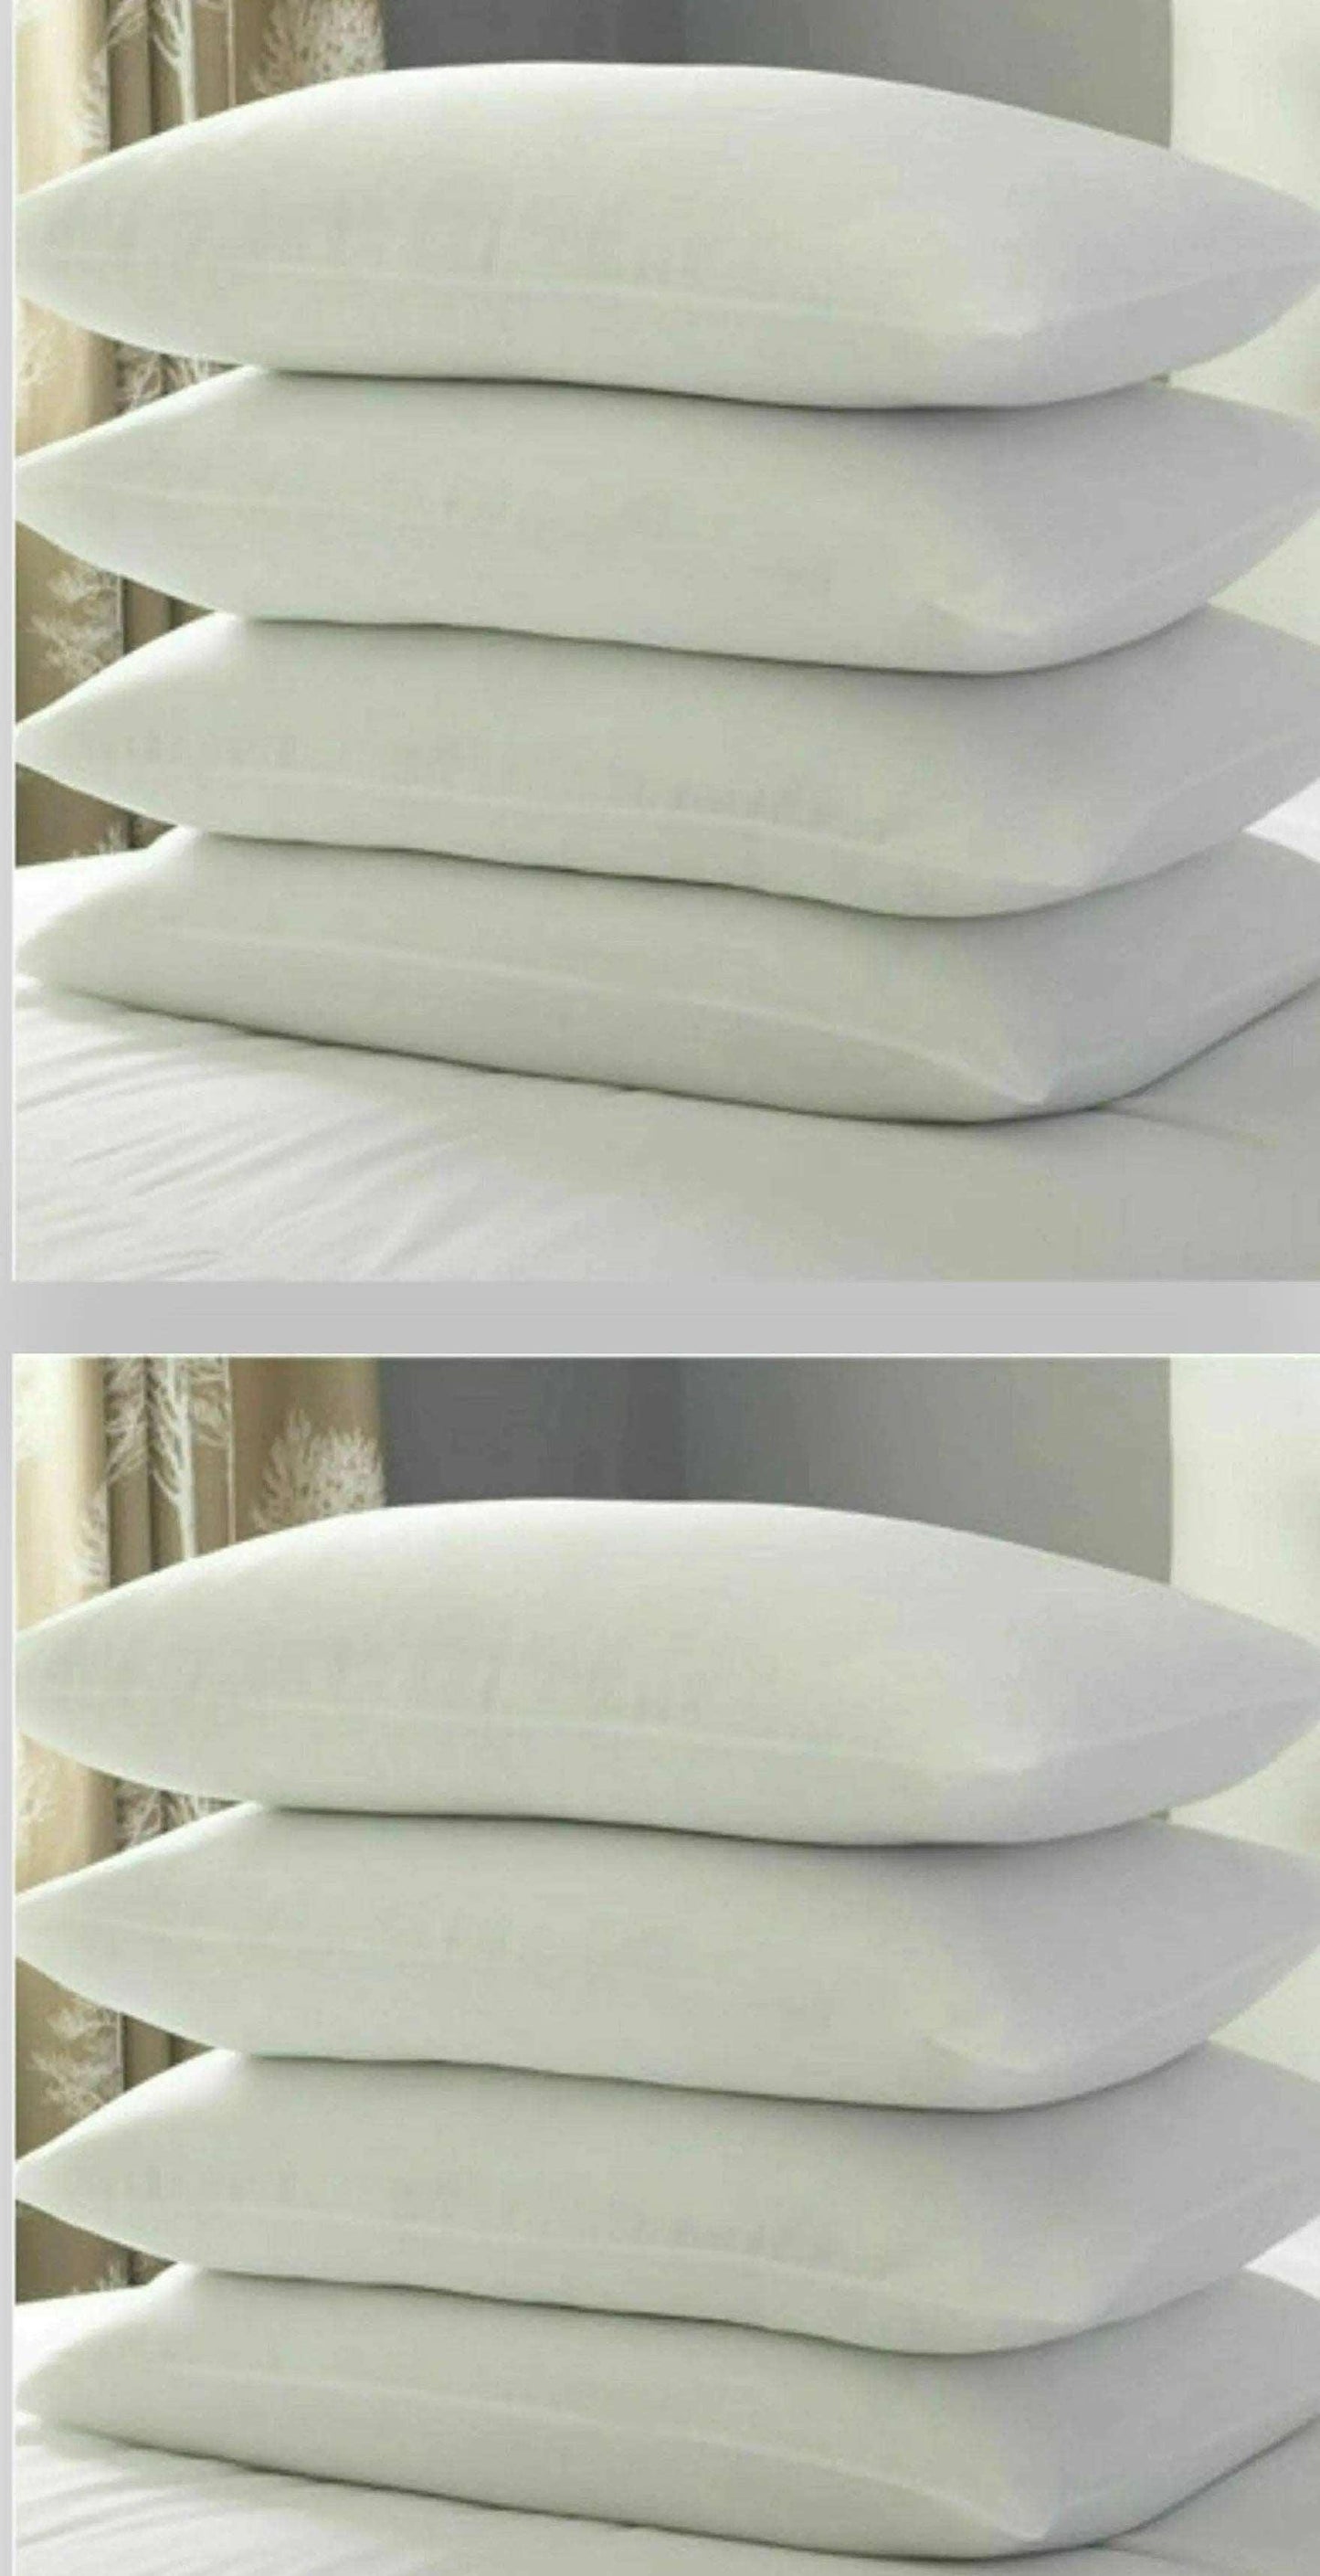 Hollow Fibre Pillows 